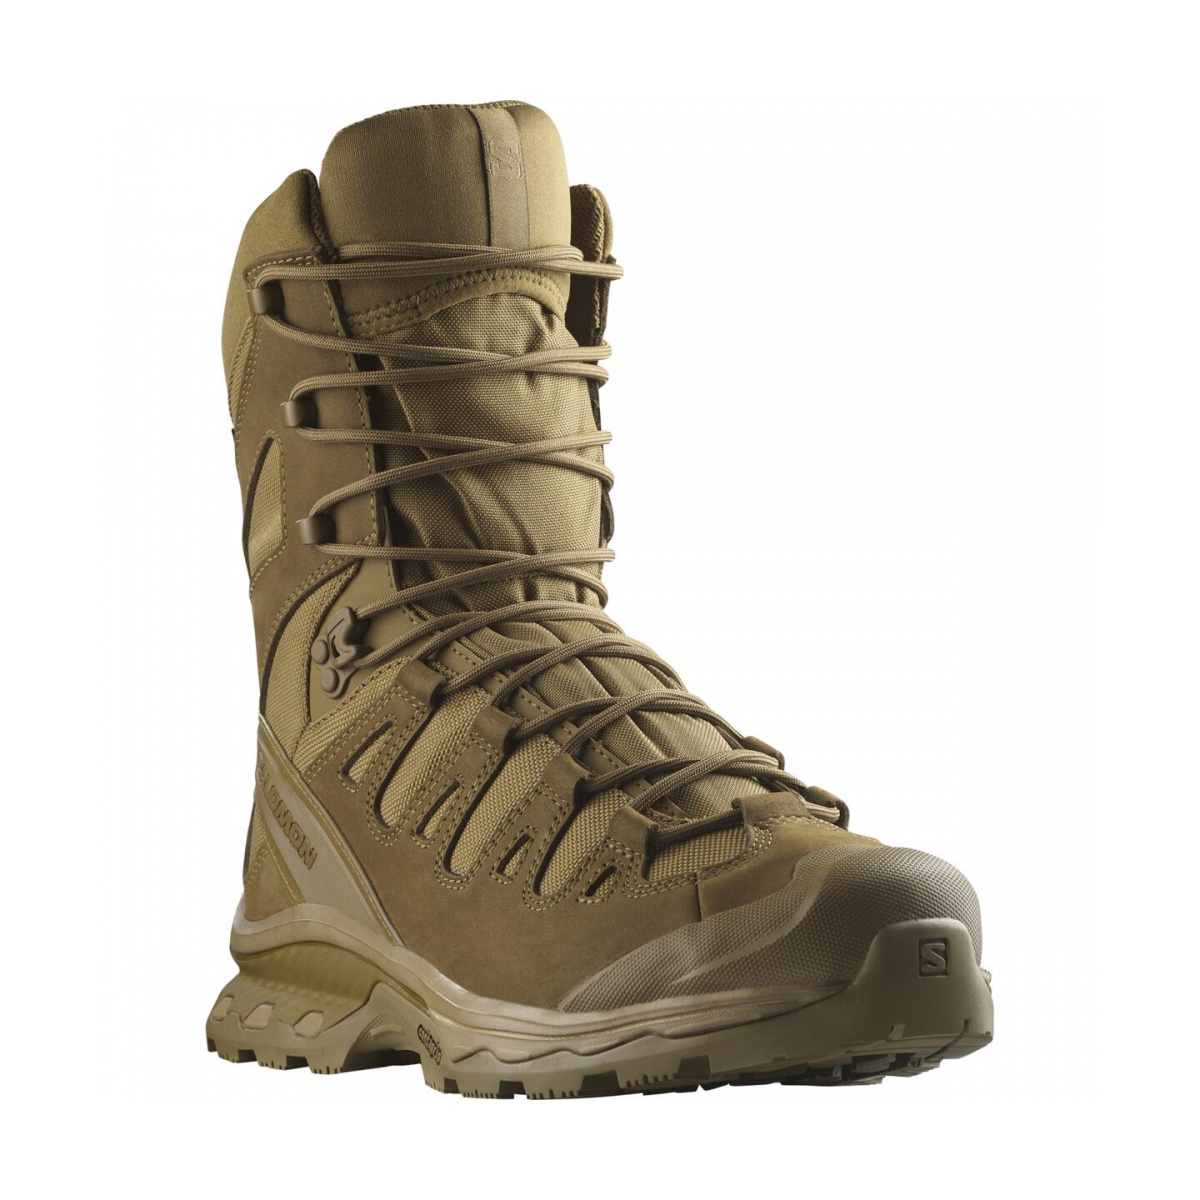 SALOMON QUEST 4D FORCES 2 HIGH GTX EN tactical footwear - COYOTE brown